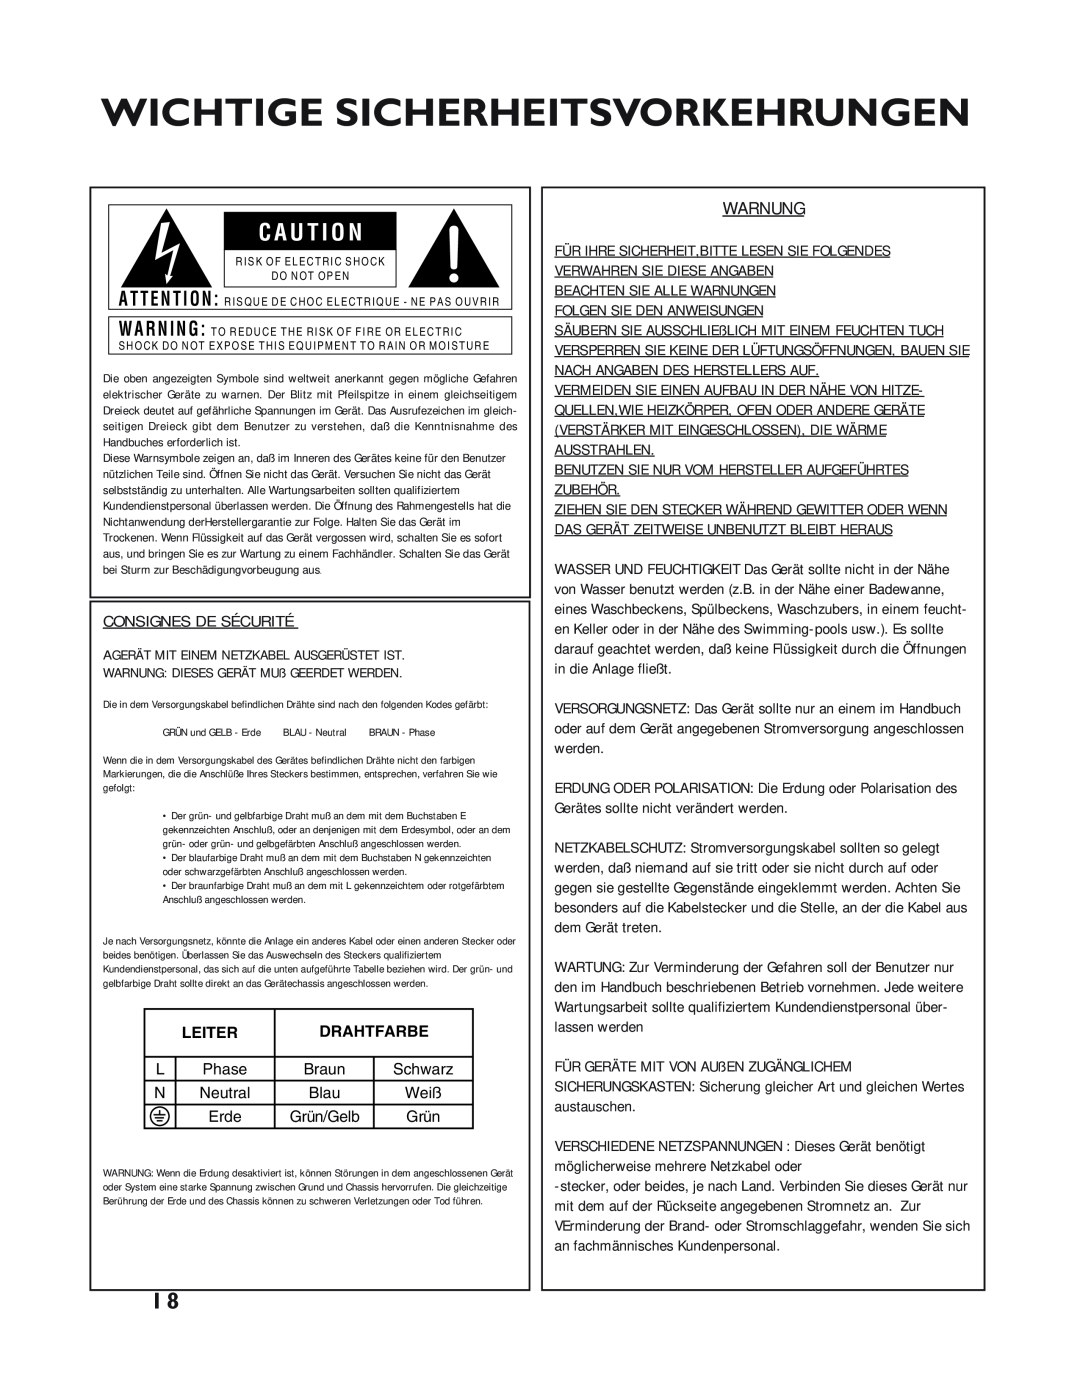 dbx Pro 12 Series Wichtige Sicherheitsvorkehrungen, Consignes De Sécurité, Beachten Sie Alle Warnungen, C A U T I O N 